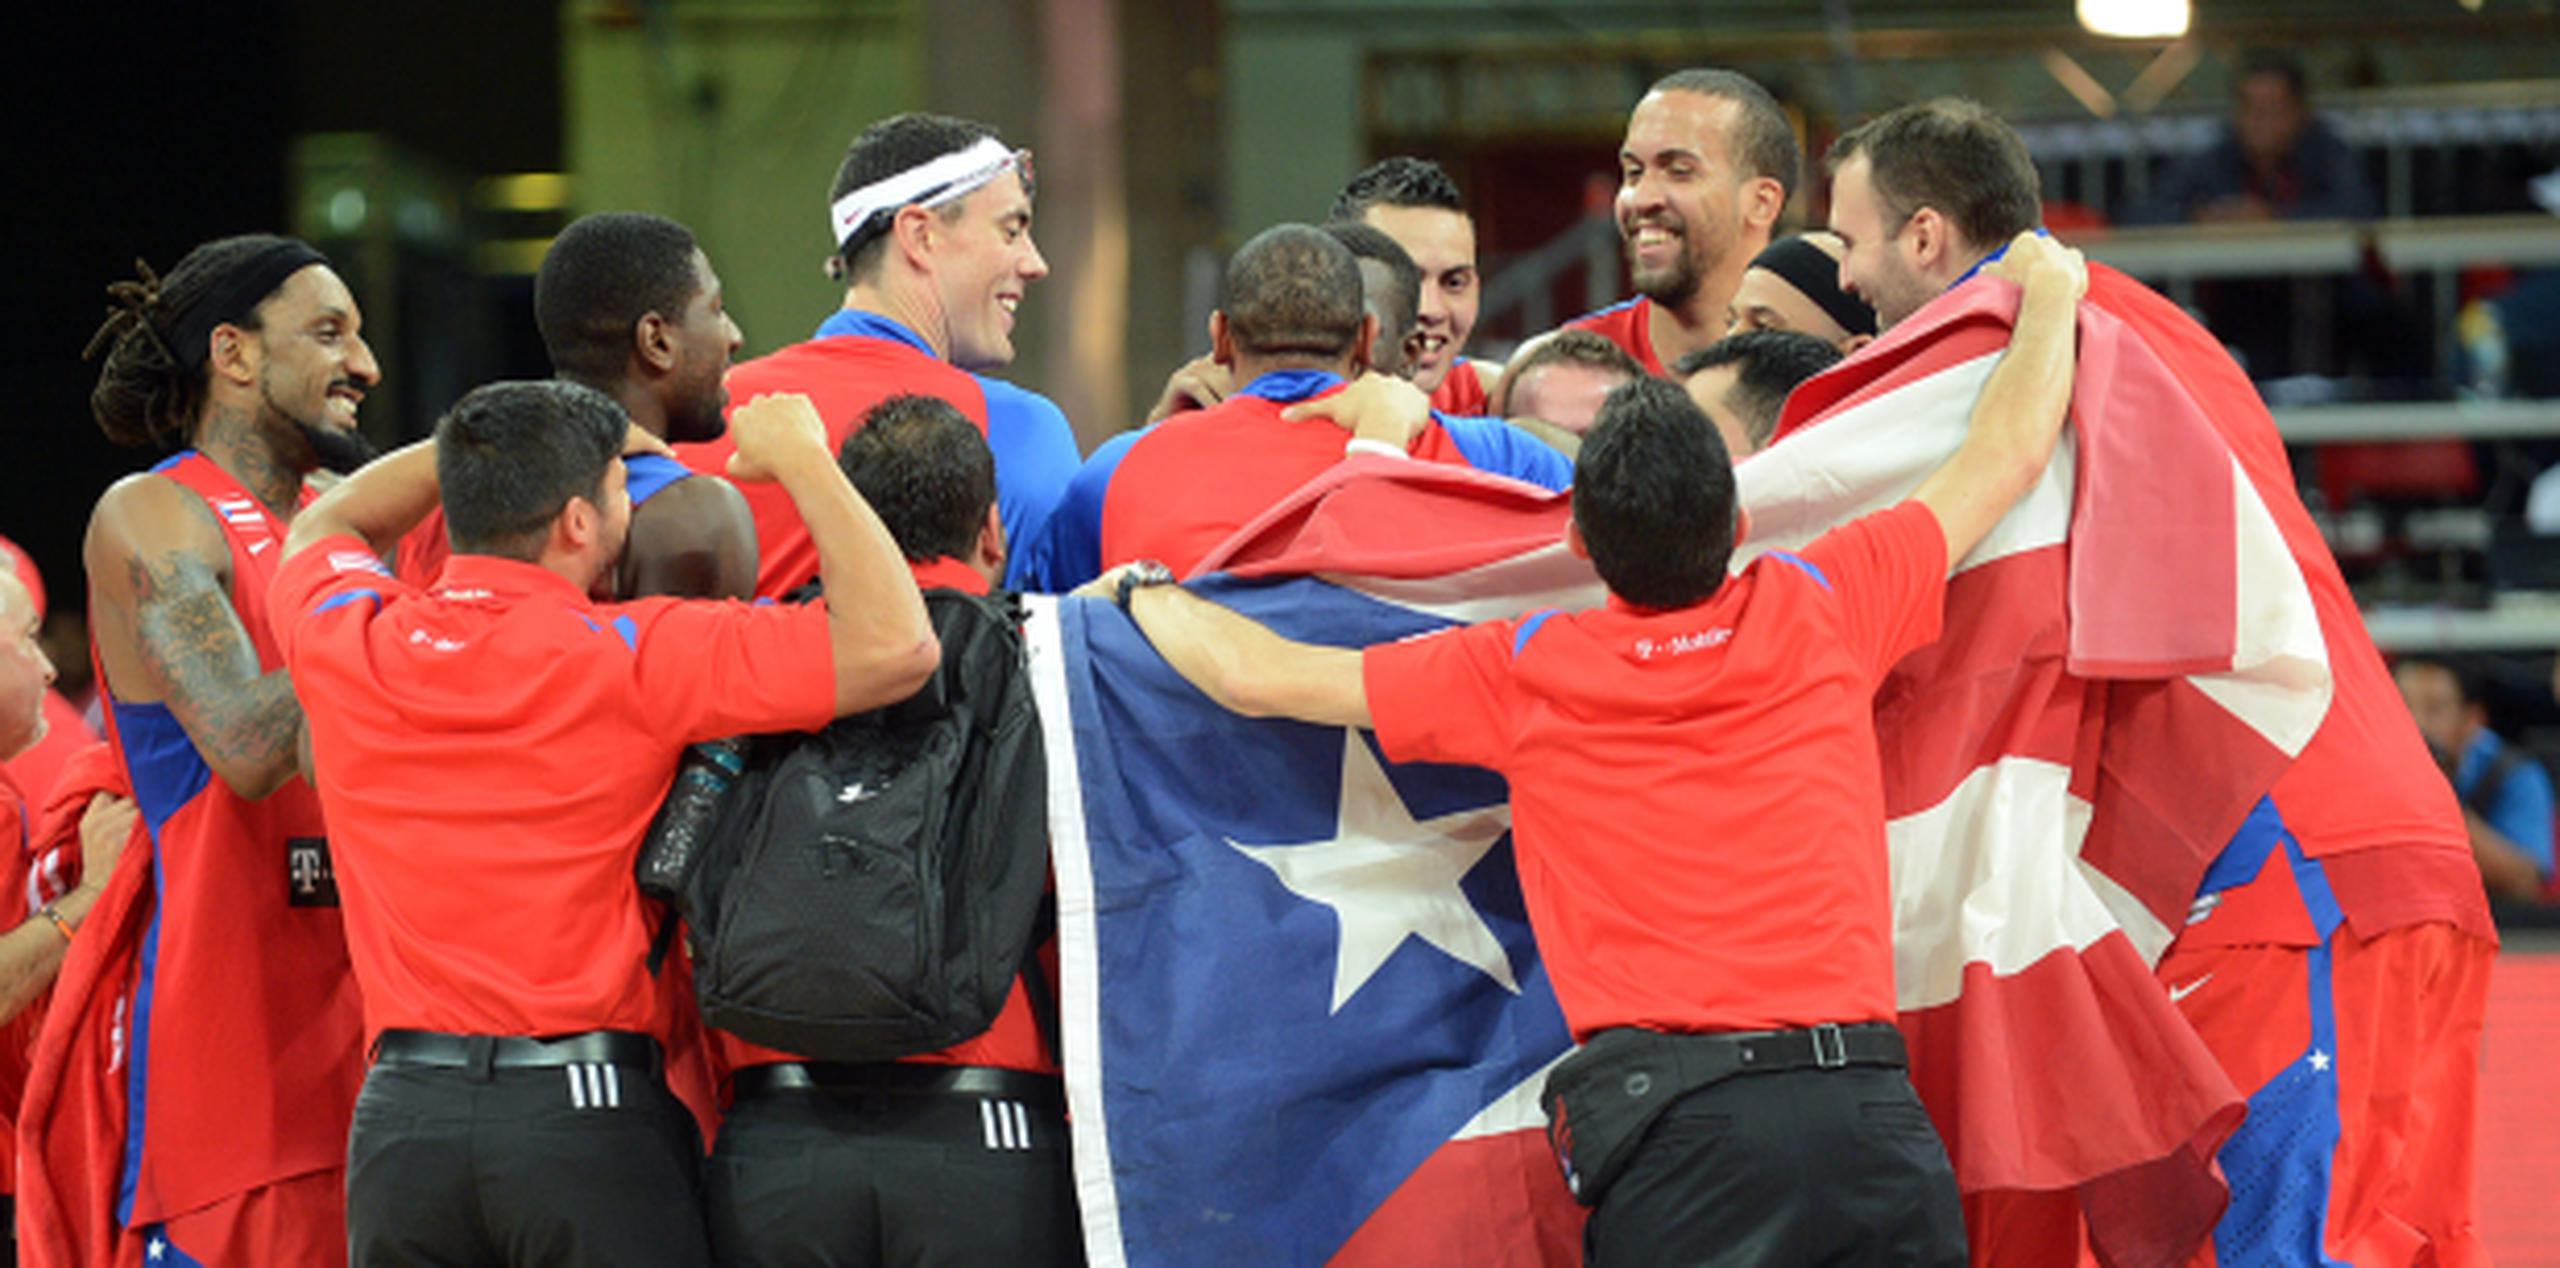 Puerto Rico aseguró su octava participación en línea en mundiales y su 13ra (en 15 oportunidades) desde que se hizo miembro de la FIBA en 1957.(Enviado especial / andre.kang@gfrmedia.com)